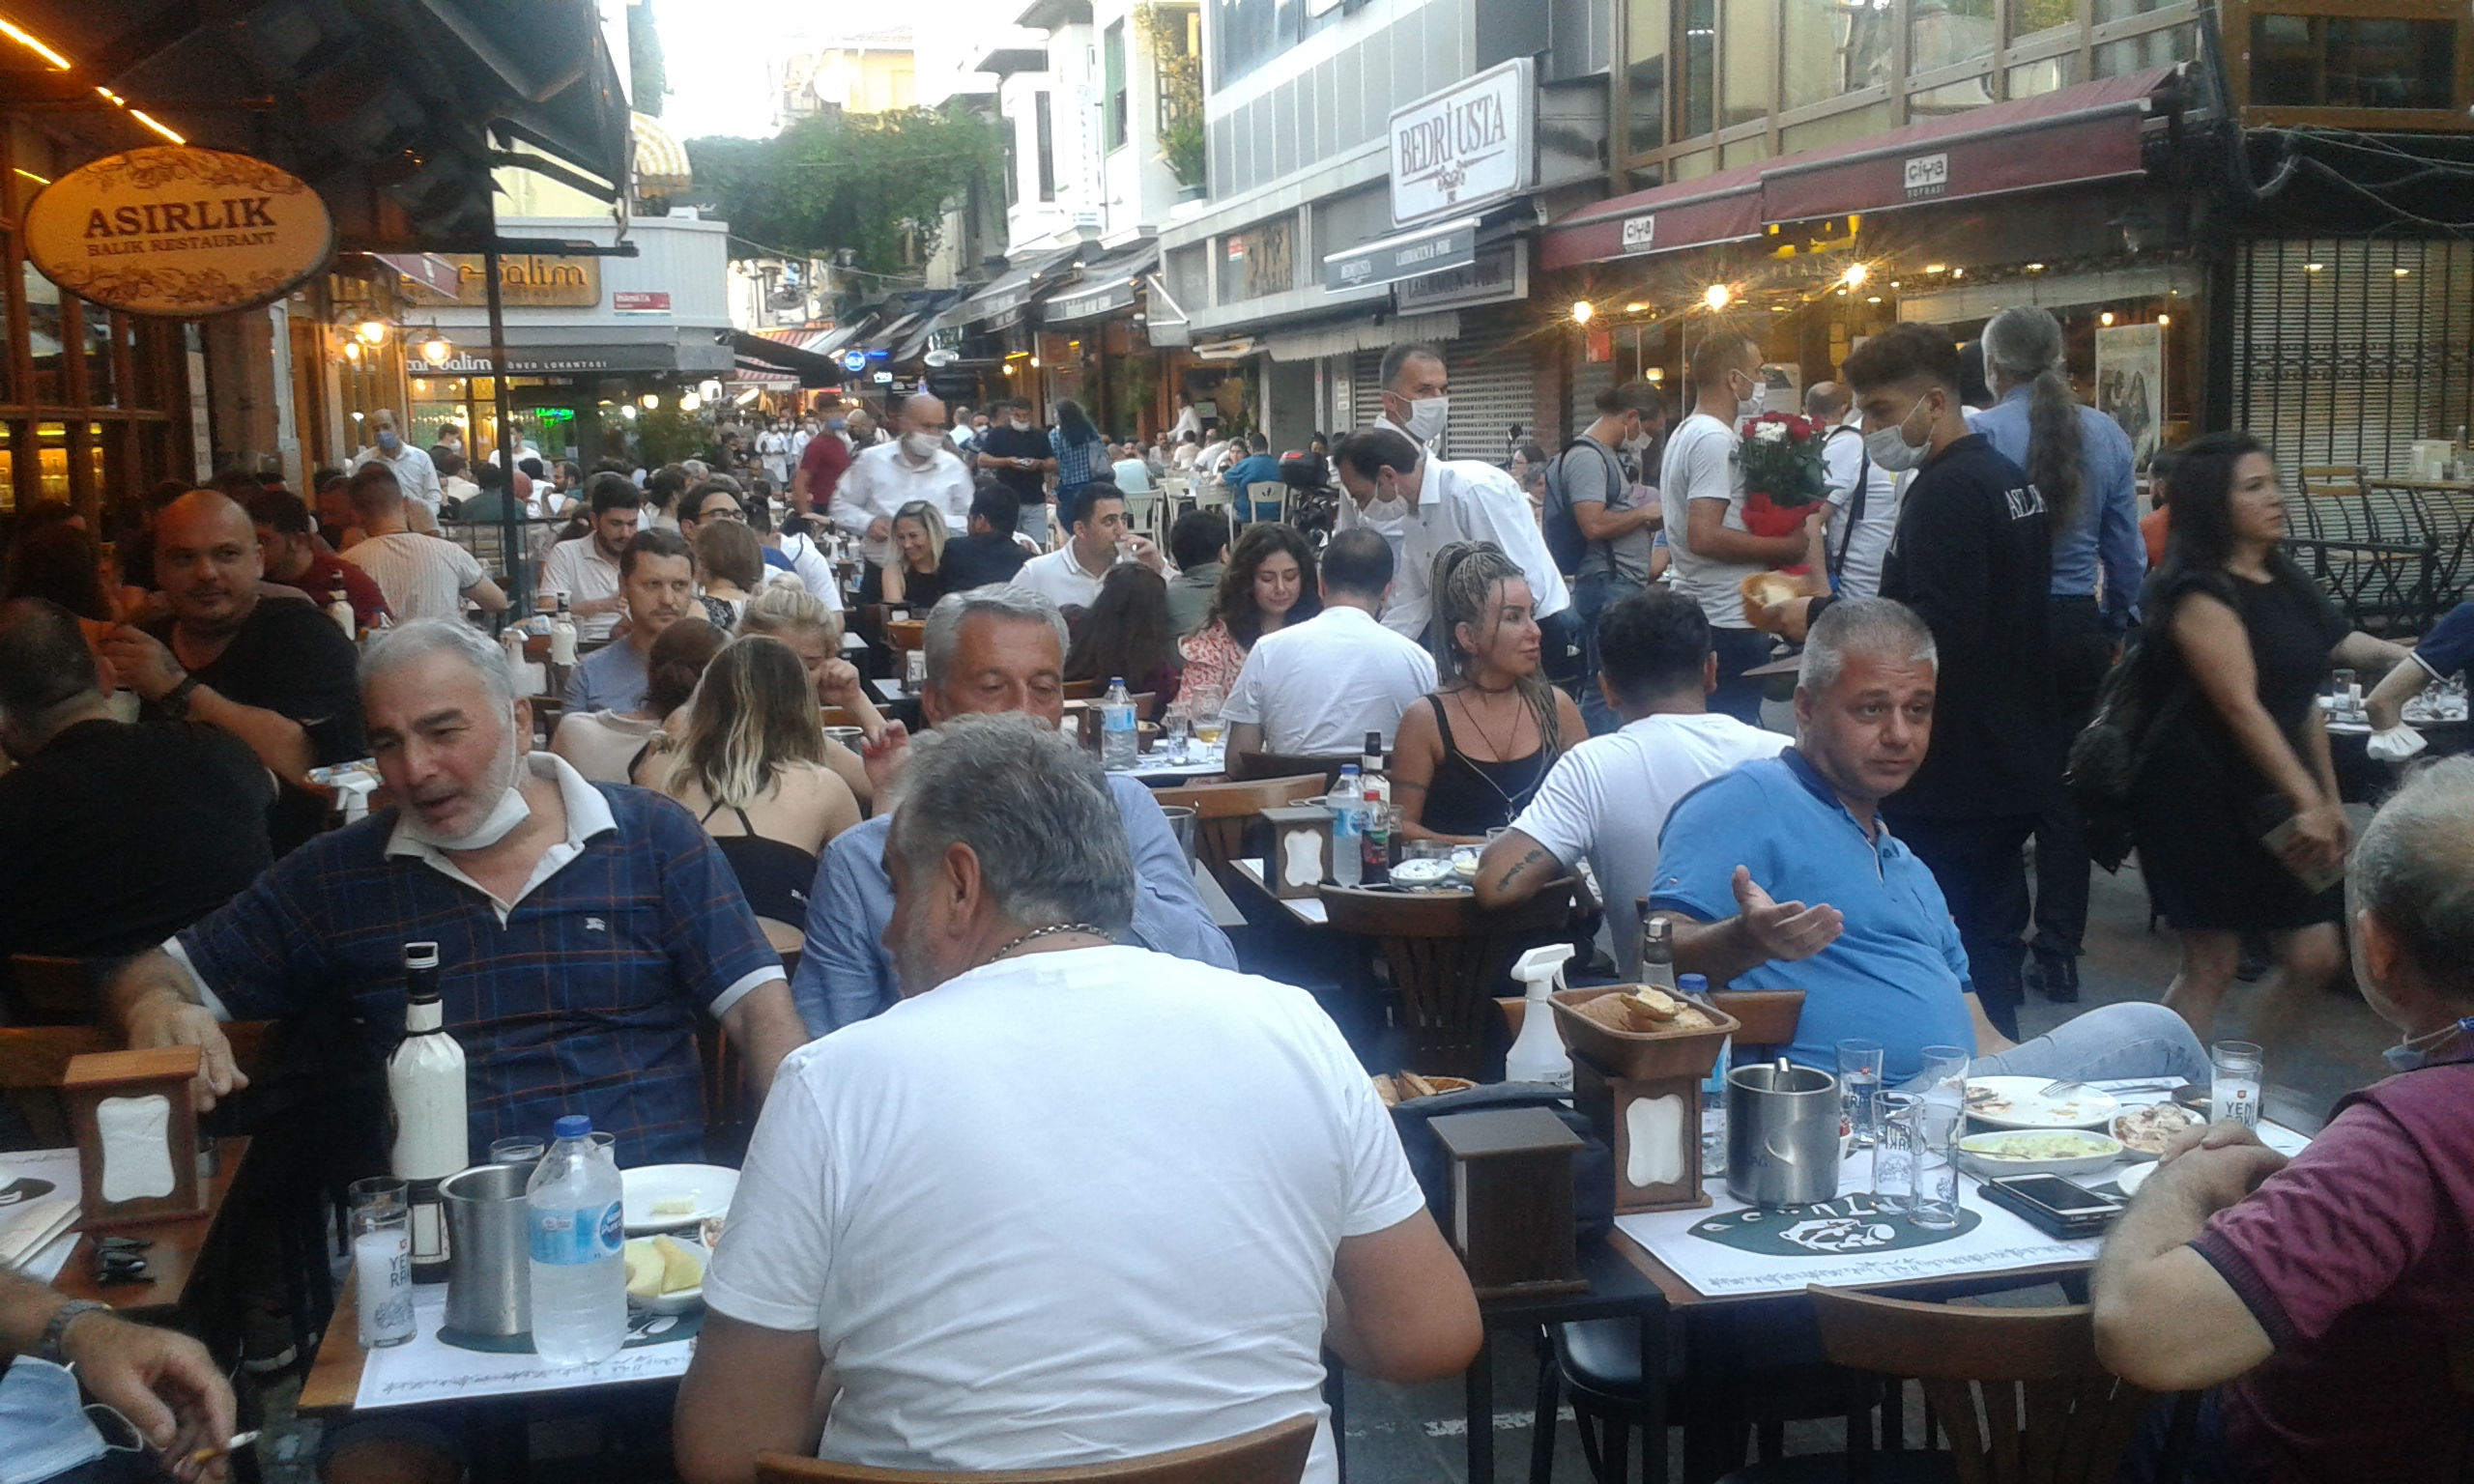 Kadıköy Tarihi Çarşı’da esnafın yüzünü güldüren hareketli bir Cumartesi